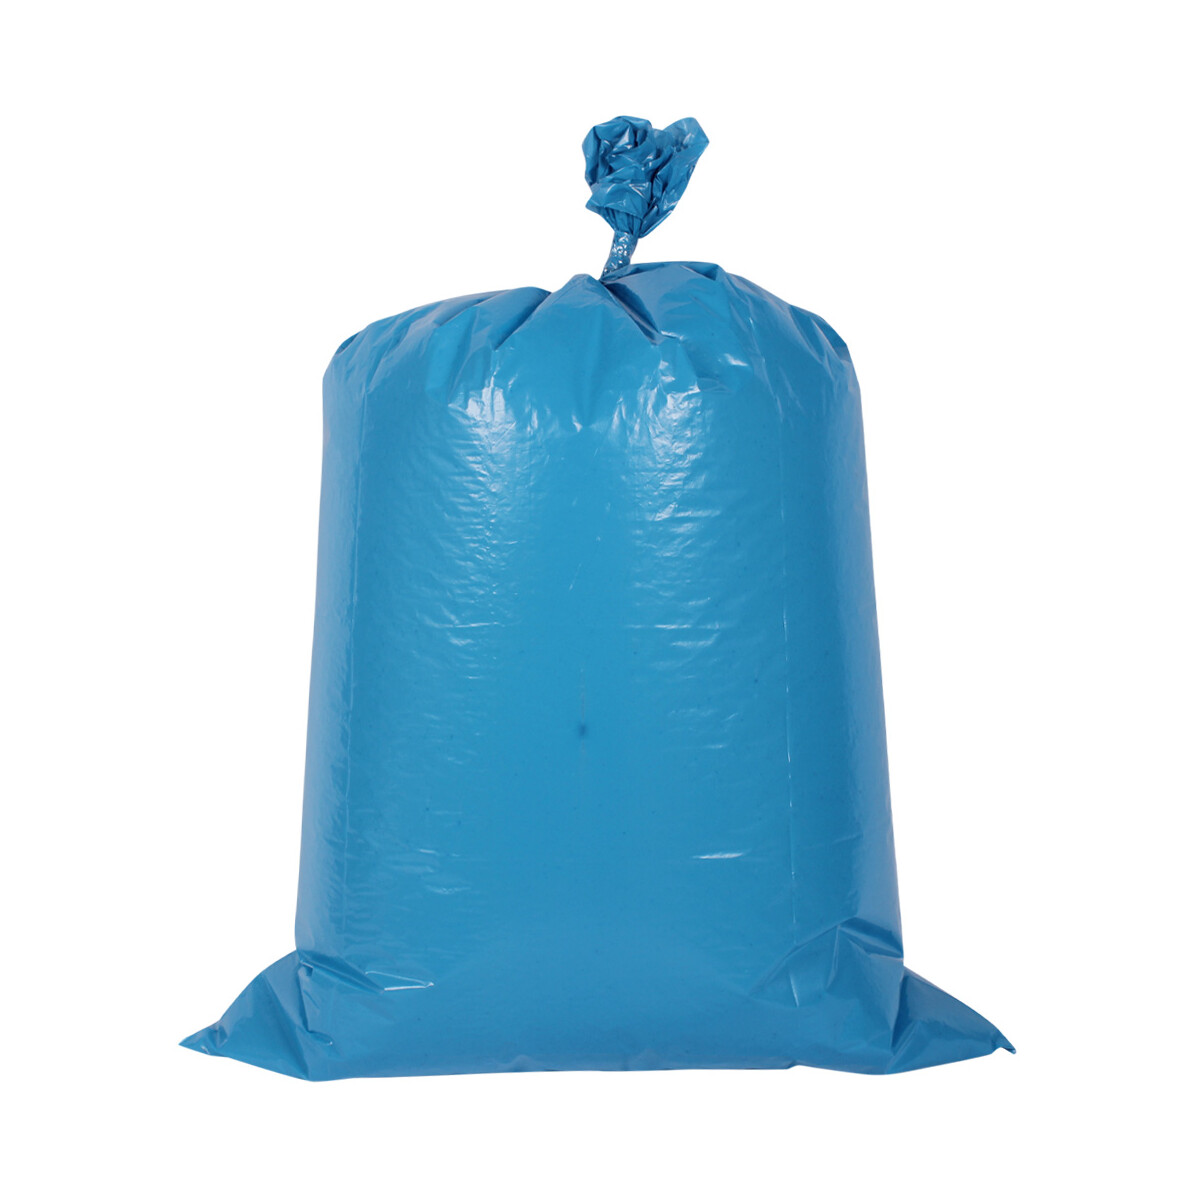 LDPE Müllbeutel 700x1100mm - blau 120 Liter - BFT Verpackungen GmbH, 37,55 €